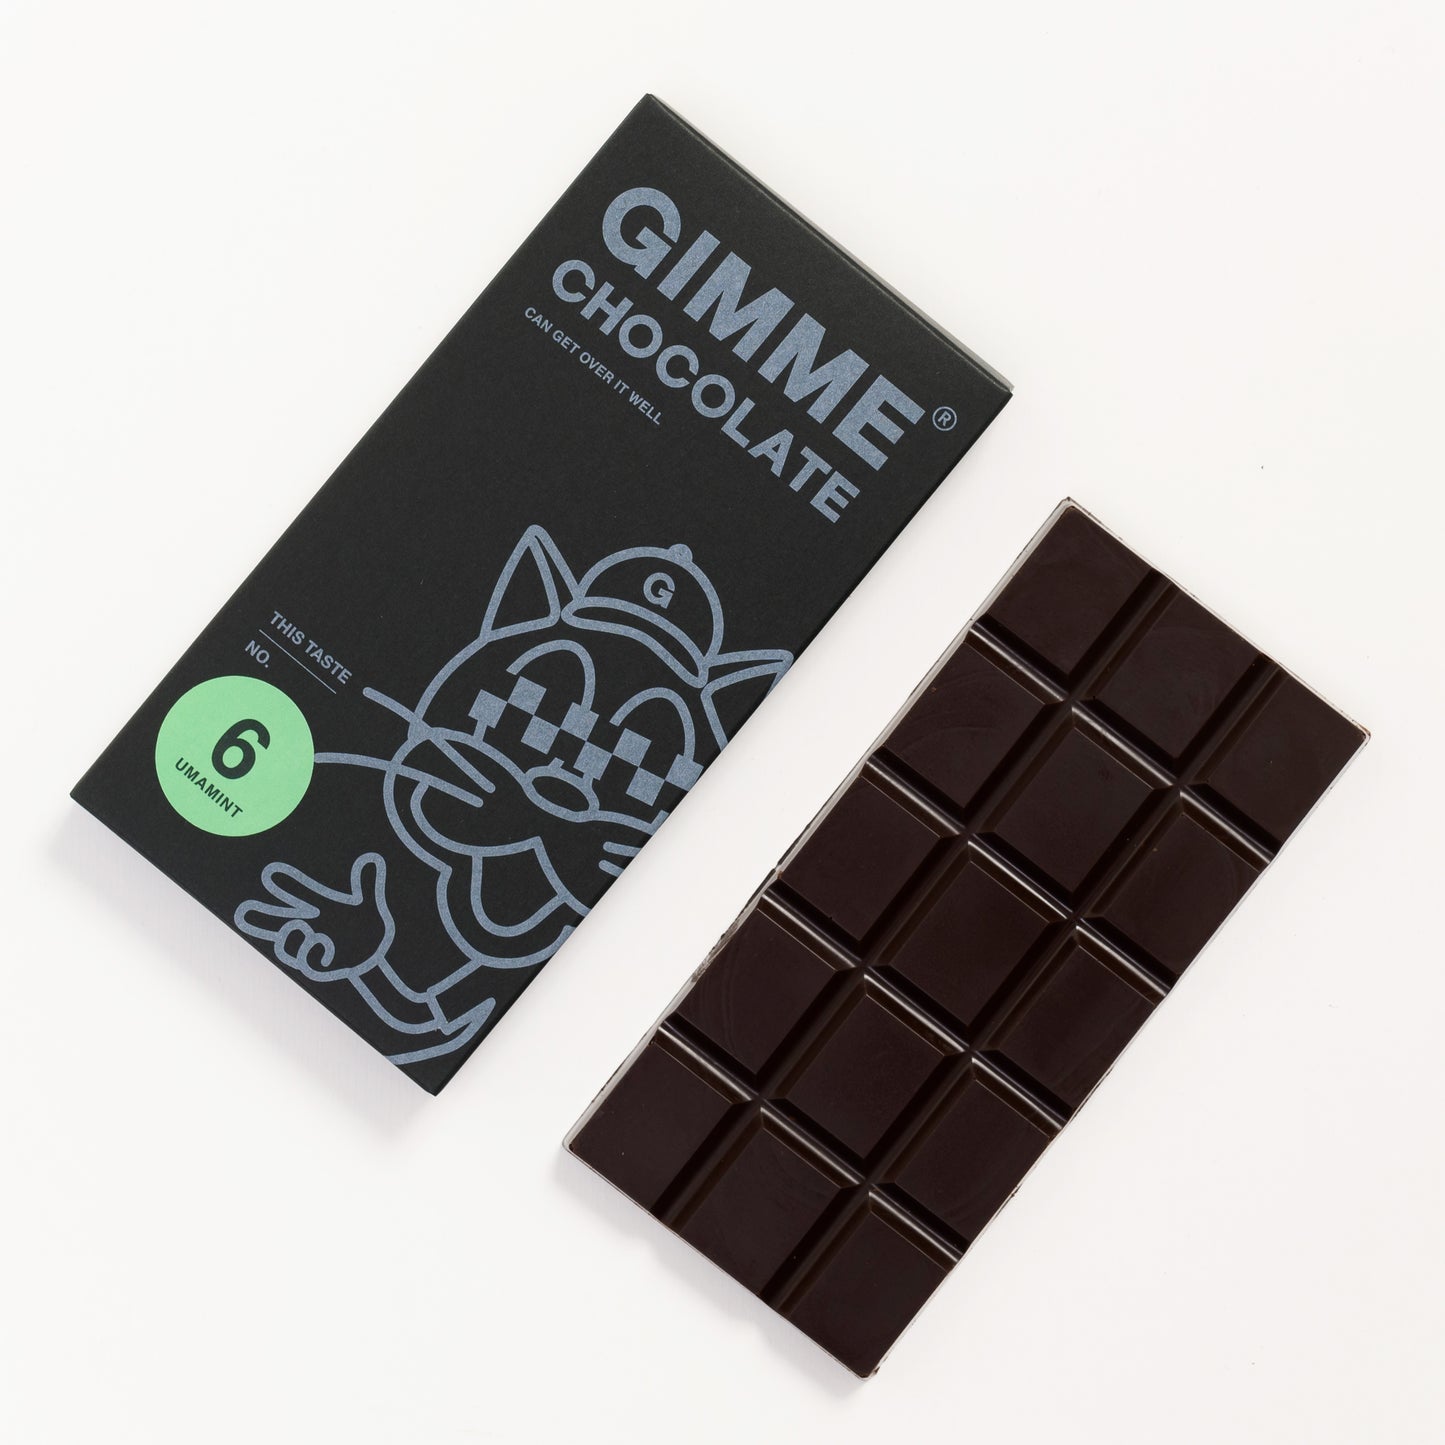 GIMME CHOCOLATE「UMA MINT」50g